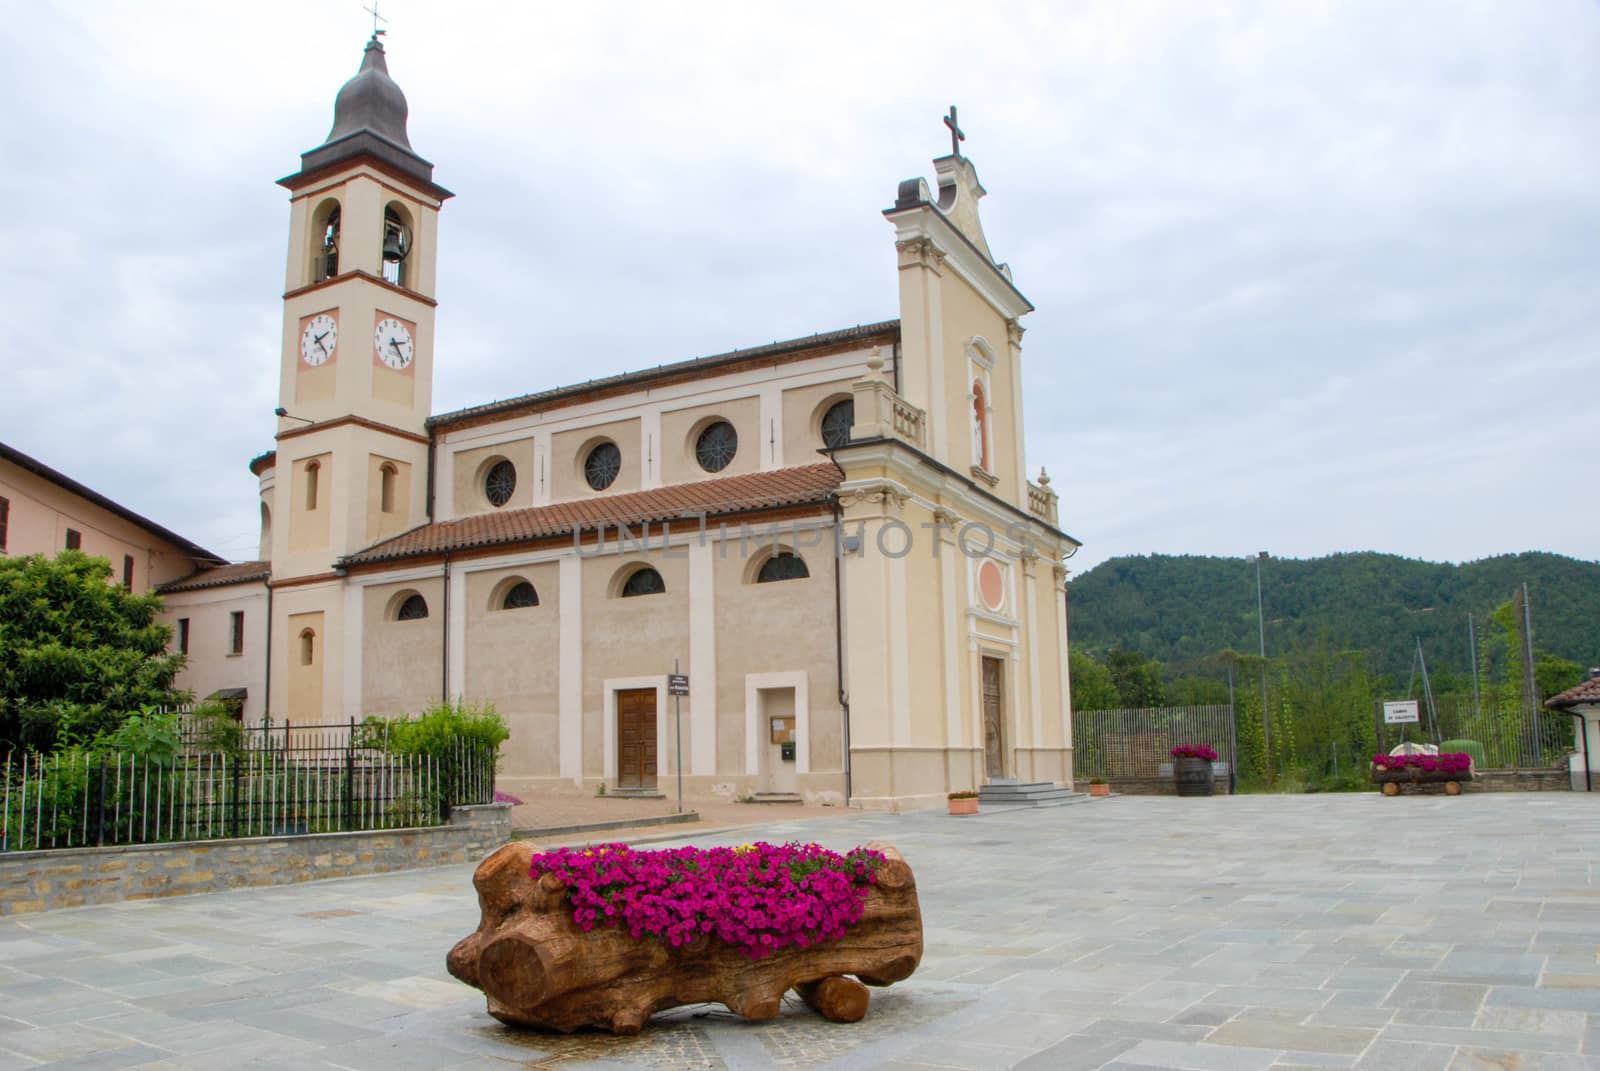 Church of Mary SS. Assunta, Torre Bormida, Piedmont - Italy